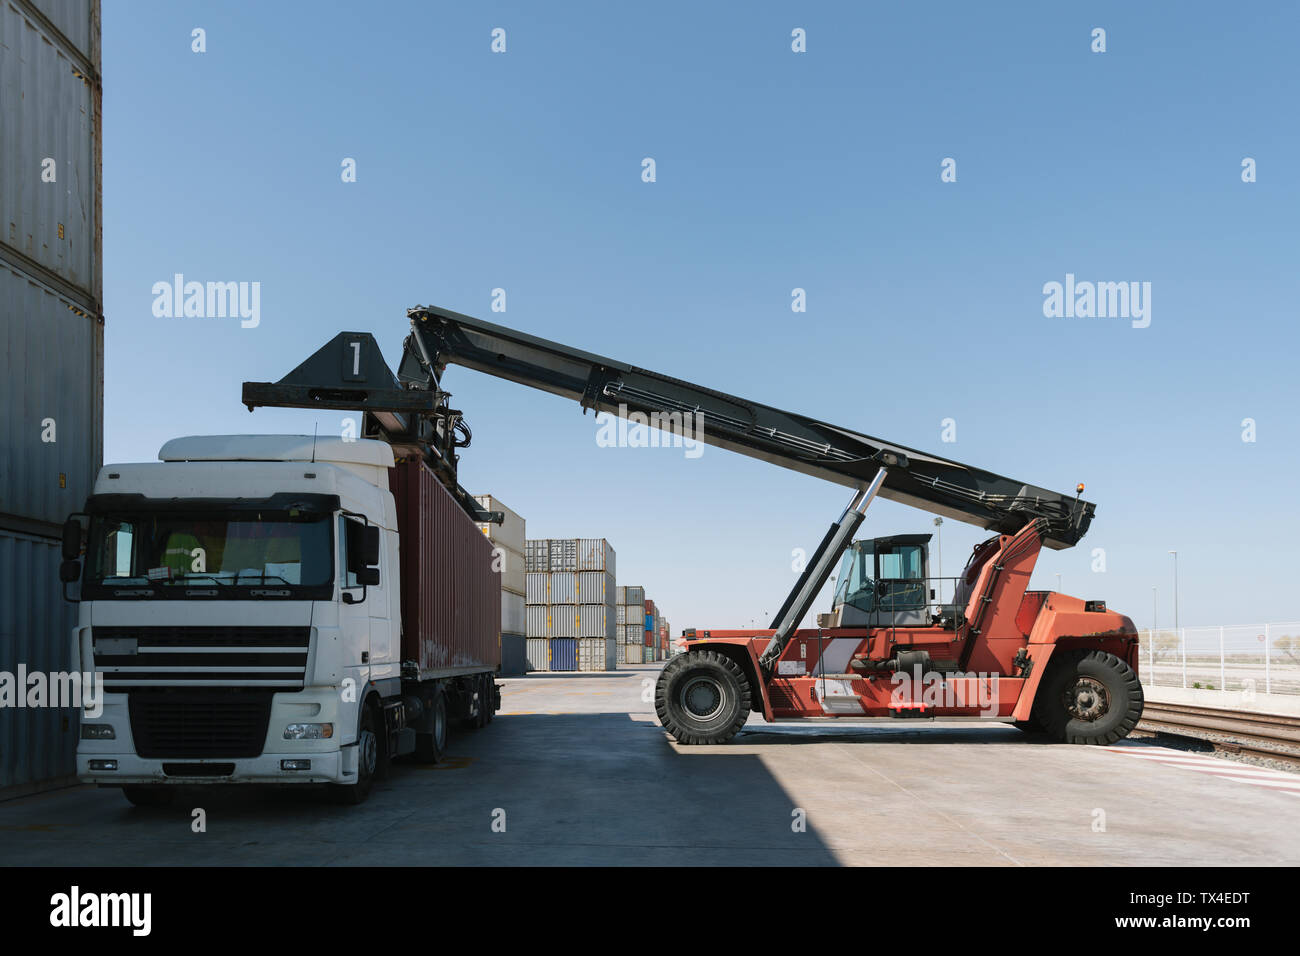 Le levage à la grue sur camion conteneur sur site industriel Banque D'Images